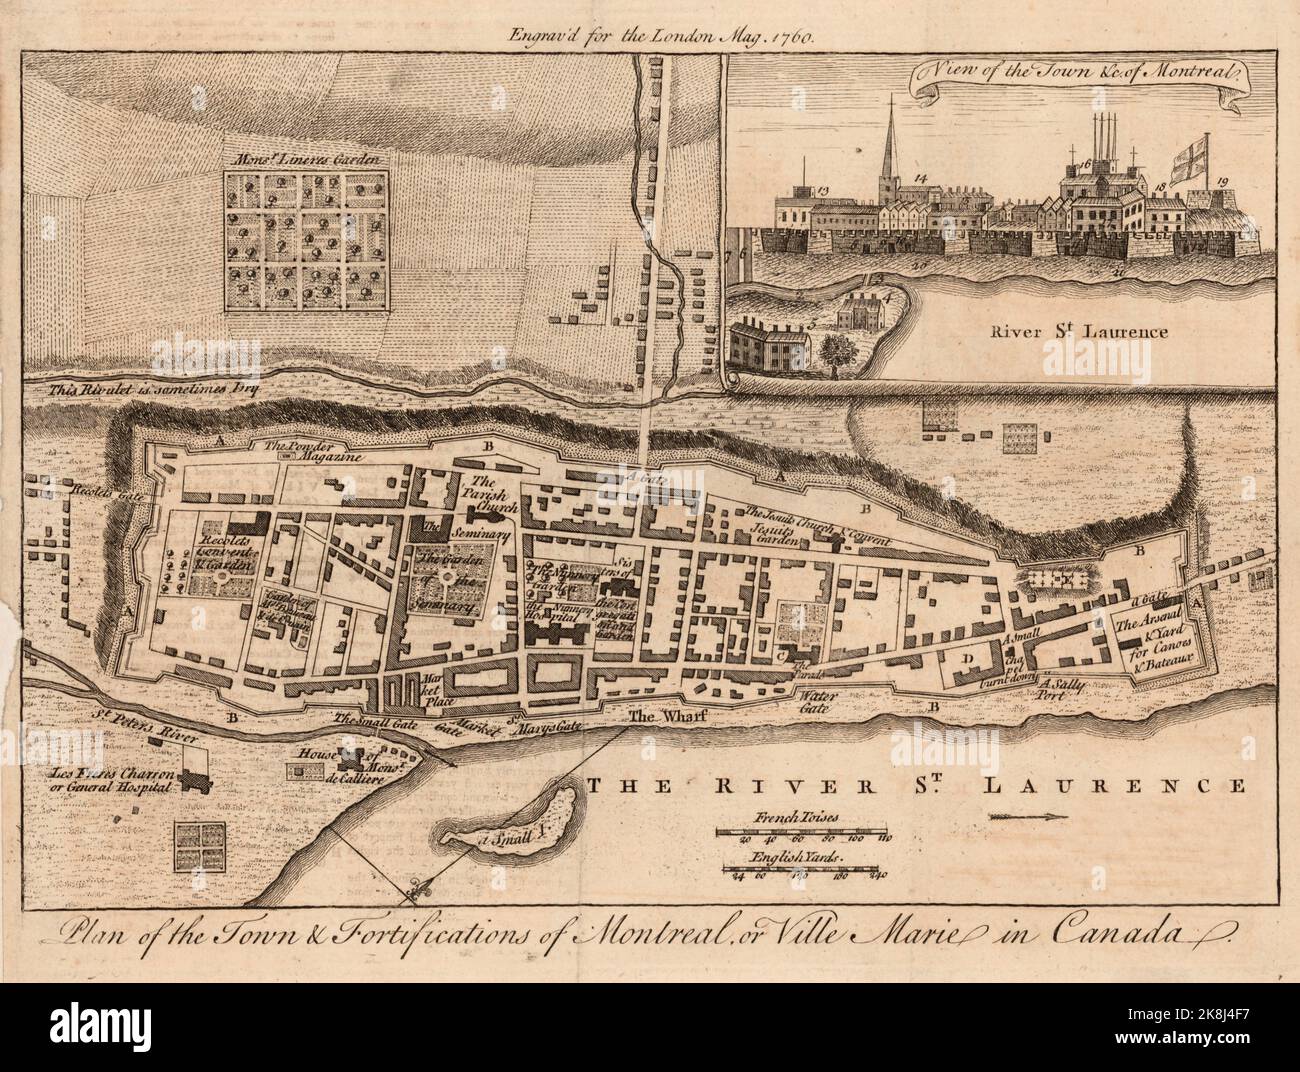 Plano de la ciudad y fortificaciones de Montreal, o Ville Marie en la provincia de Quebec, Canadá ca. 1760 Foto de stock